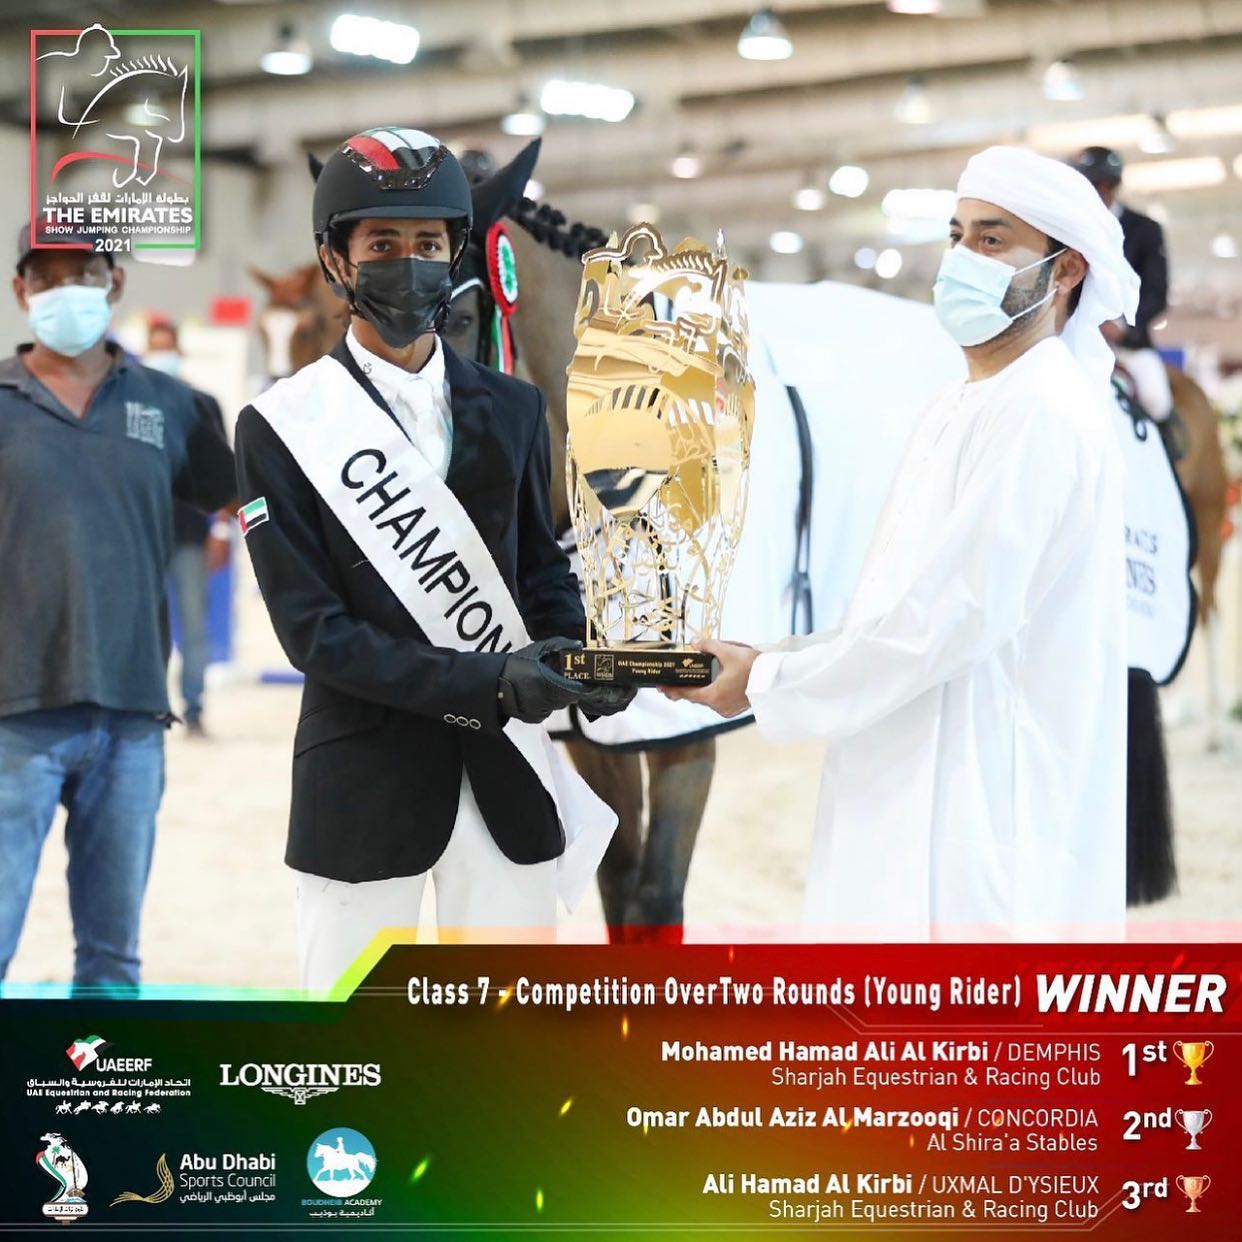 بالأسماء والصور.. تعرف على الفائزين في بطولة الإمارات لقفز الحواجز 2021